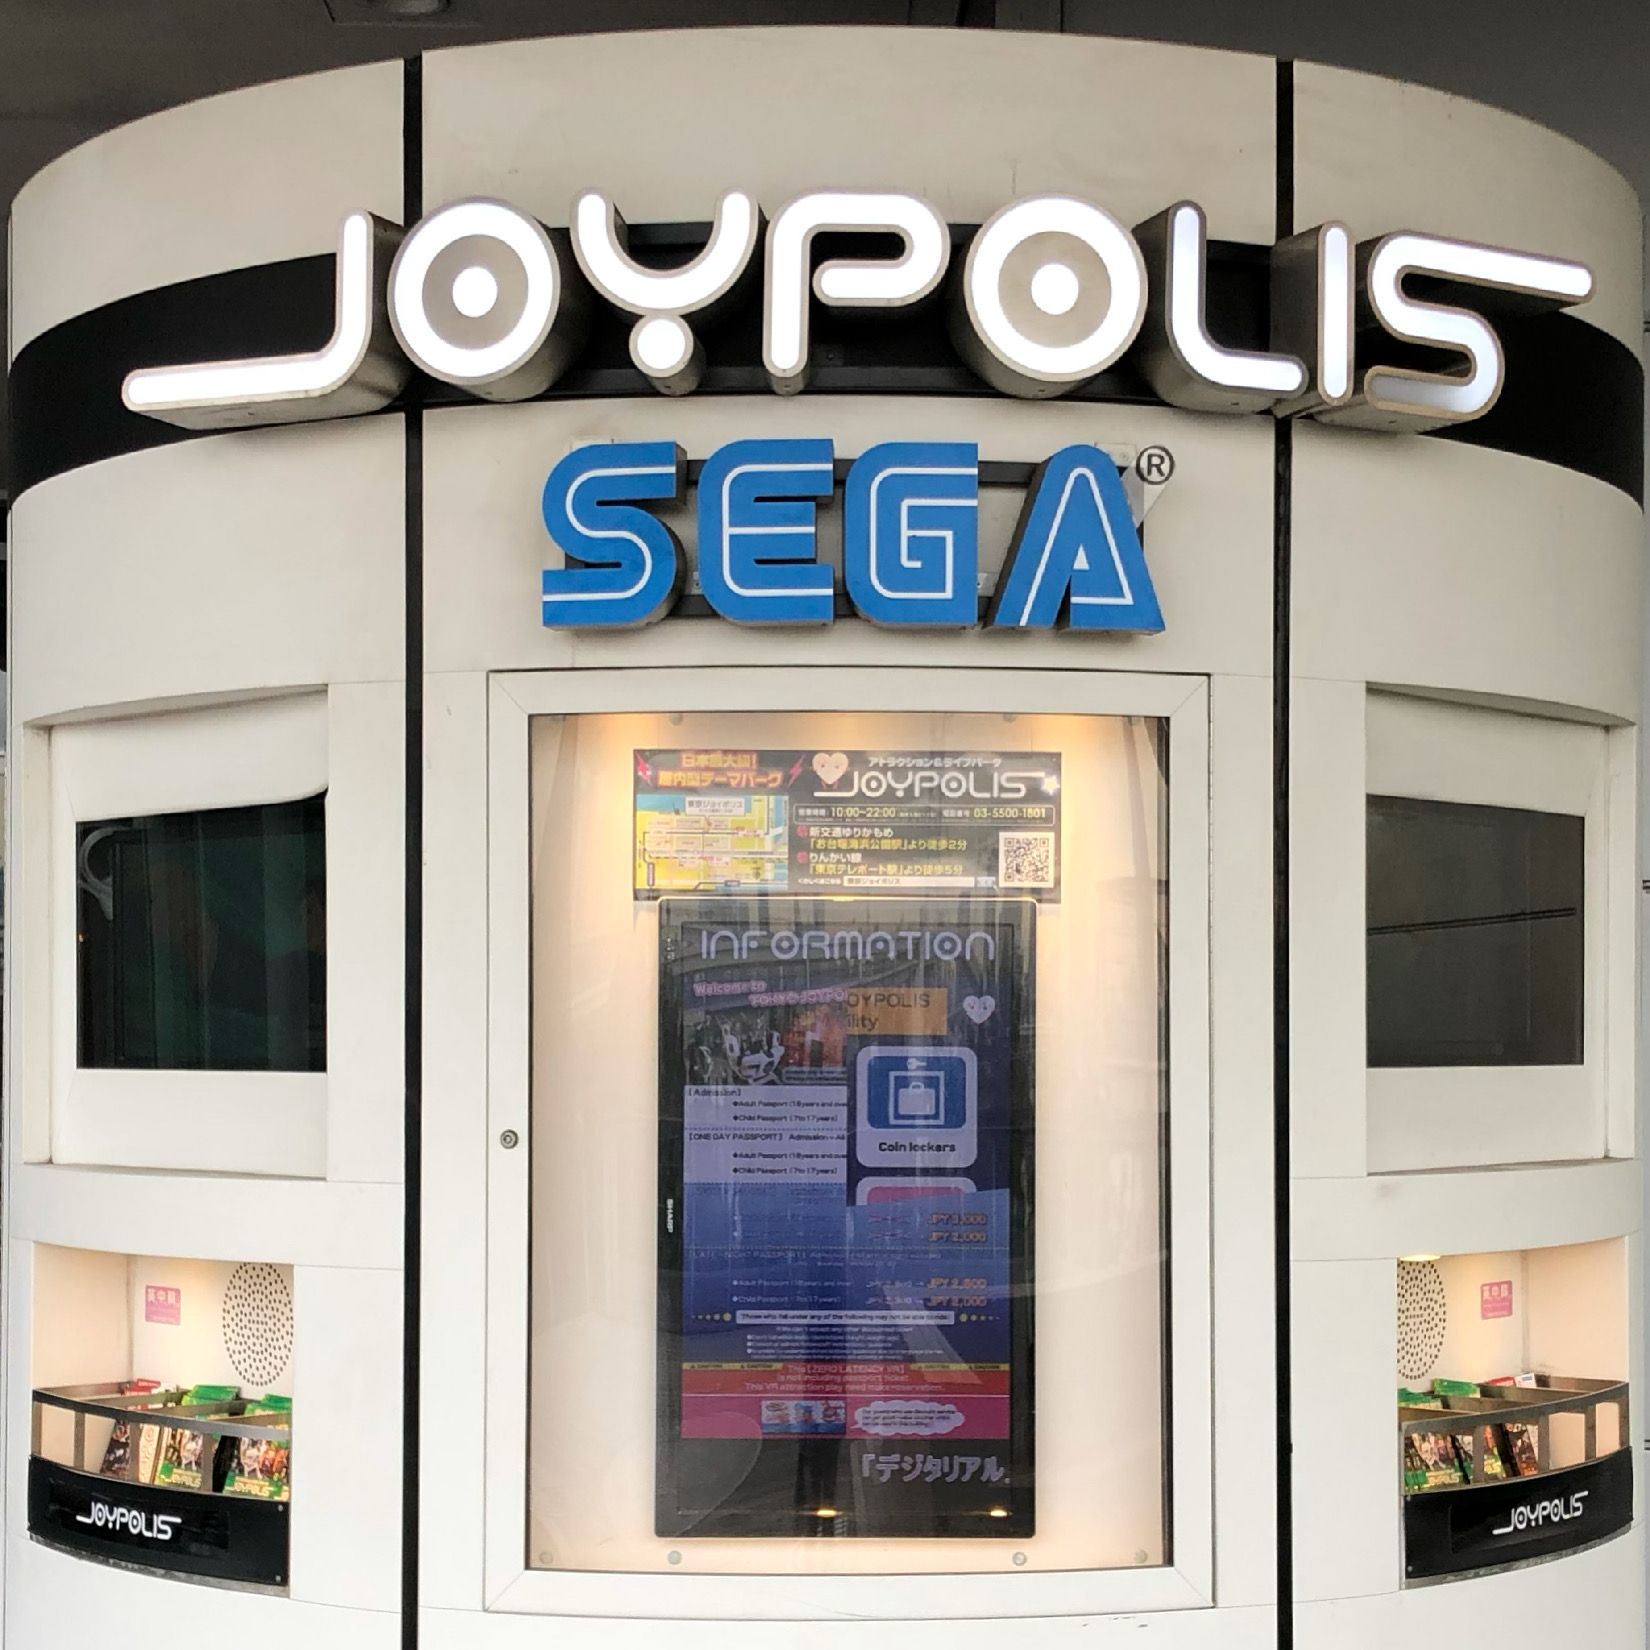 Inside Tokyo Joypolis